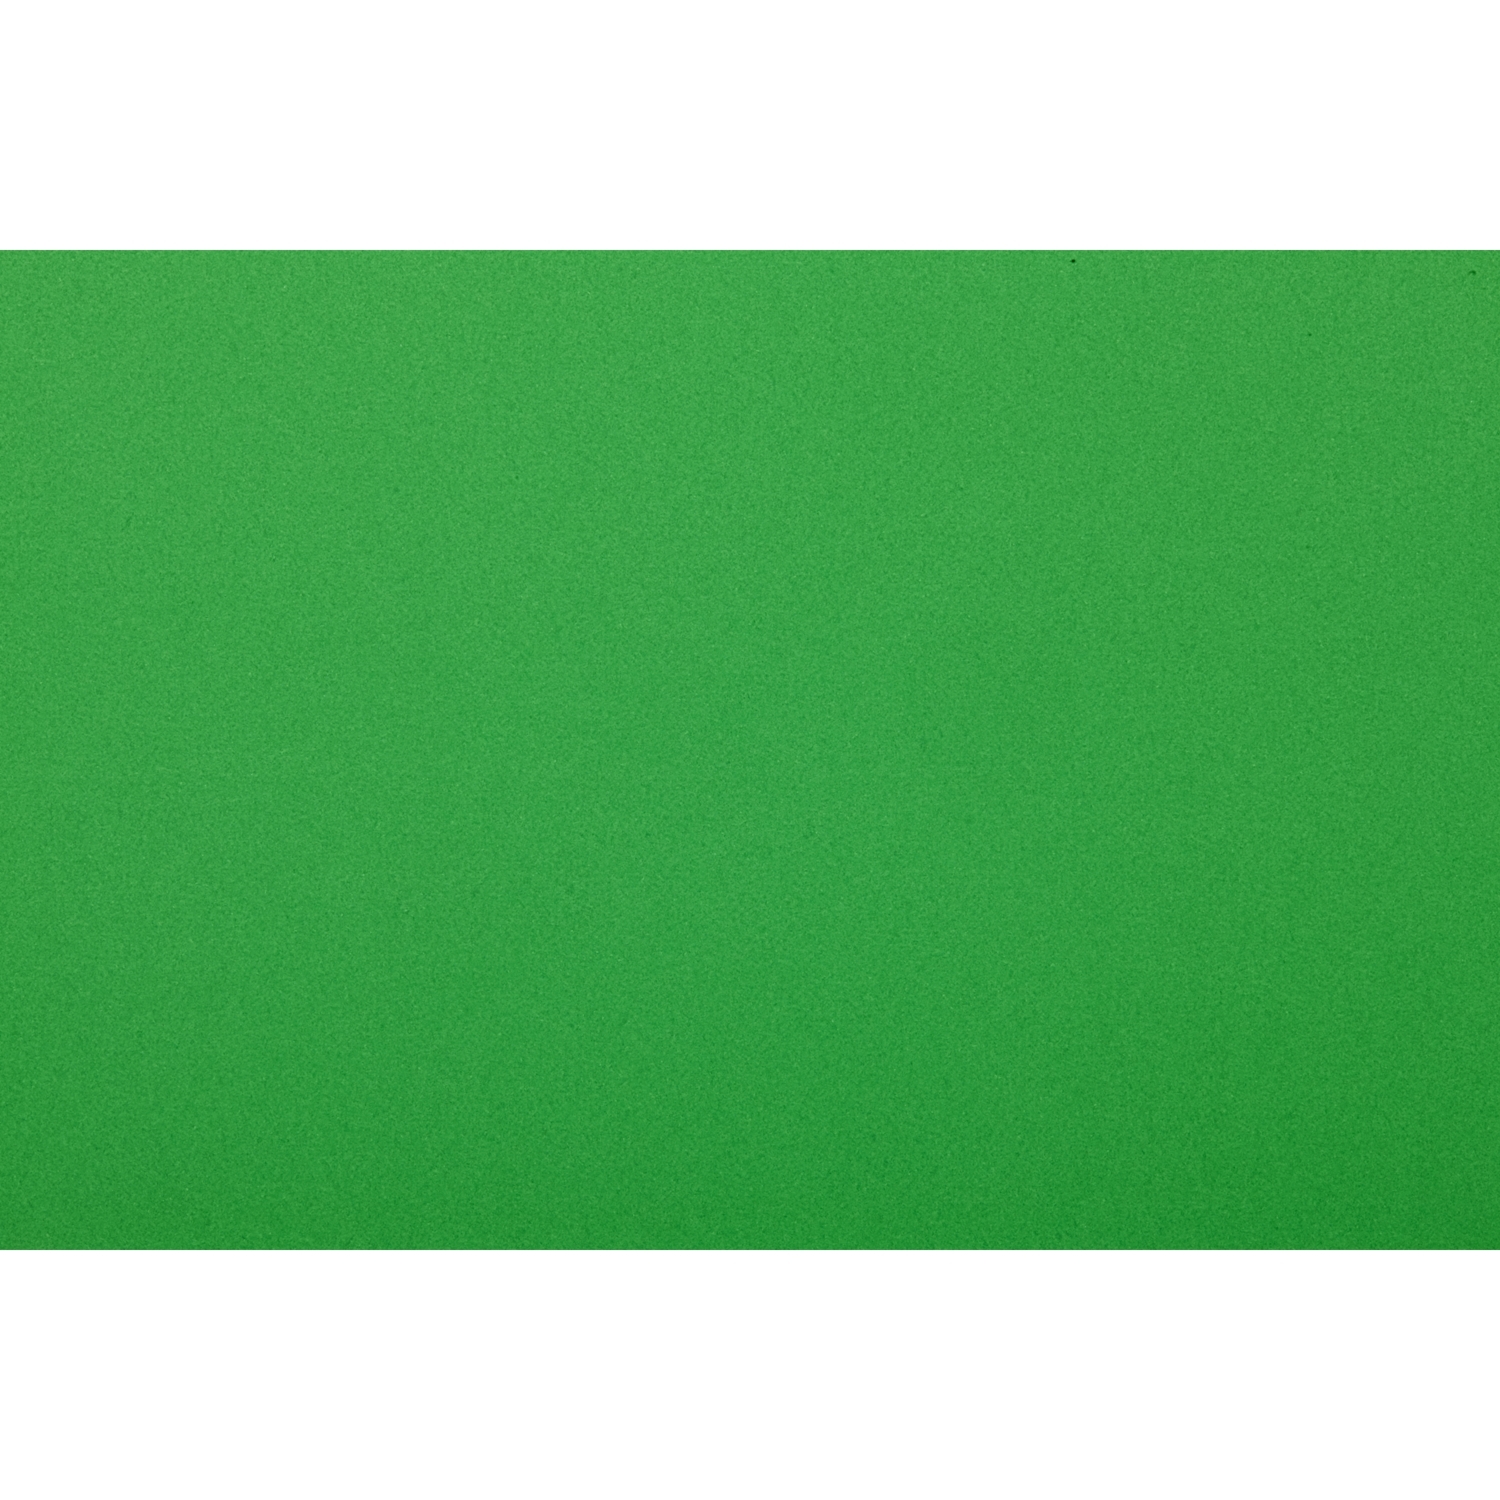 Slater Harrison Colourcard - Leaf Green Image